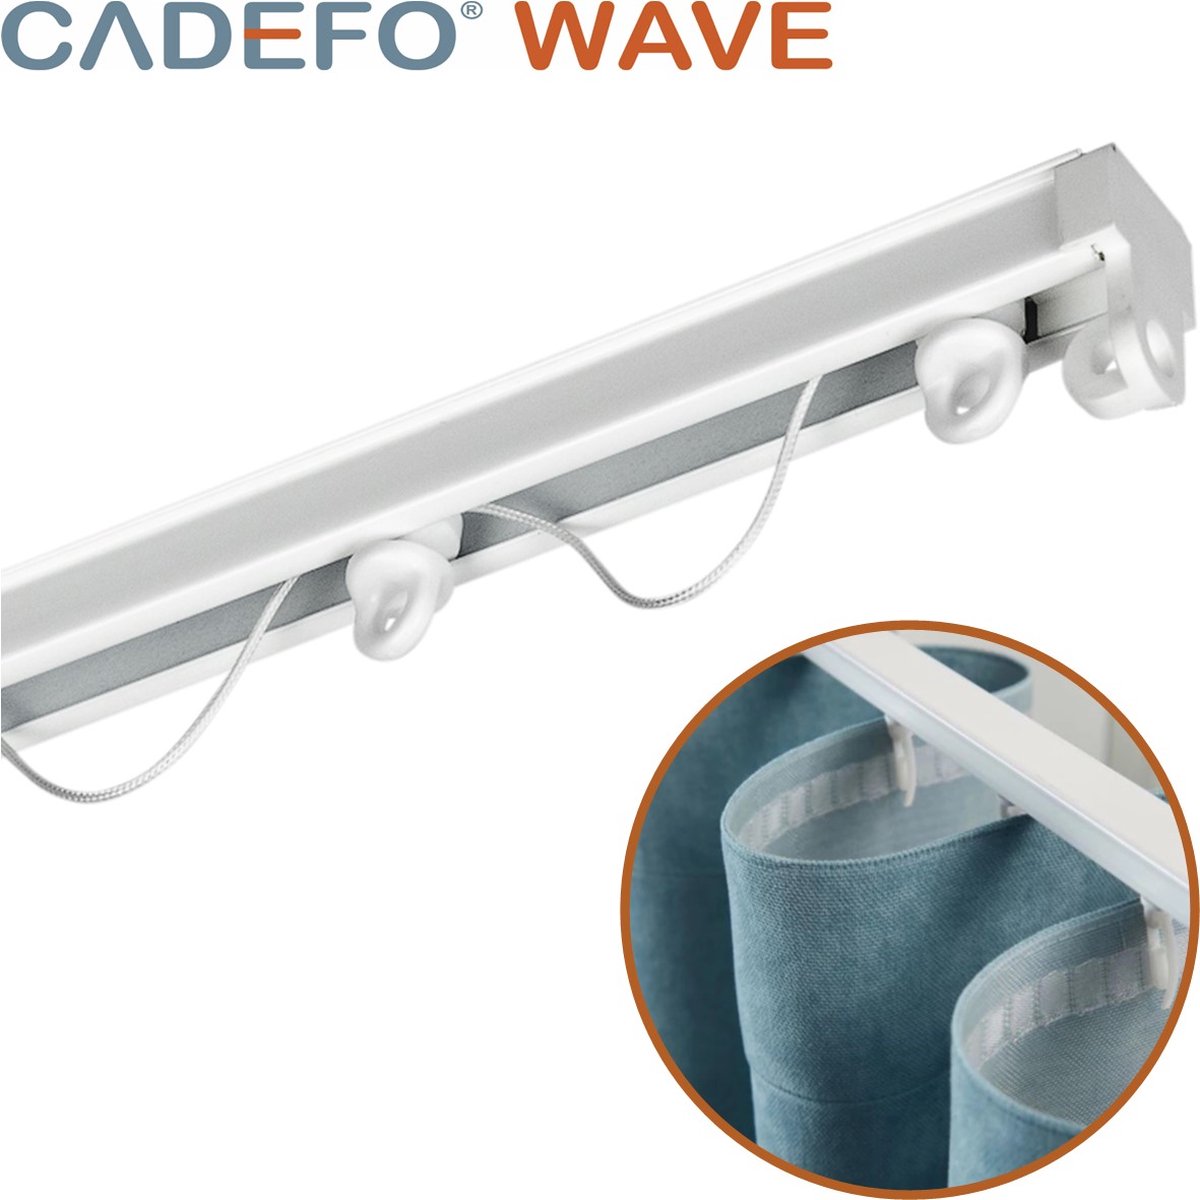 CADEFO WAVE (251 - 300 cm) Gordijnrails - Compleet op maat! - UIT 1 STUK - Leverbaar tot 6 meter - Plafondbevestiging - Lengte 279 cm